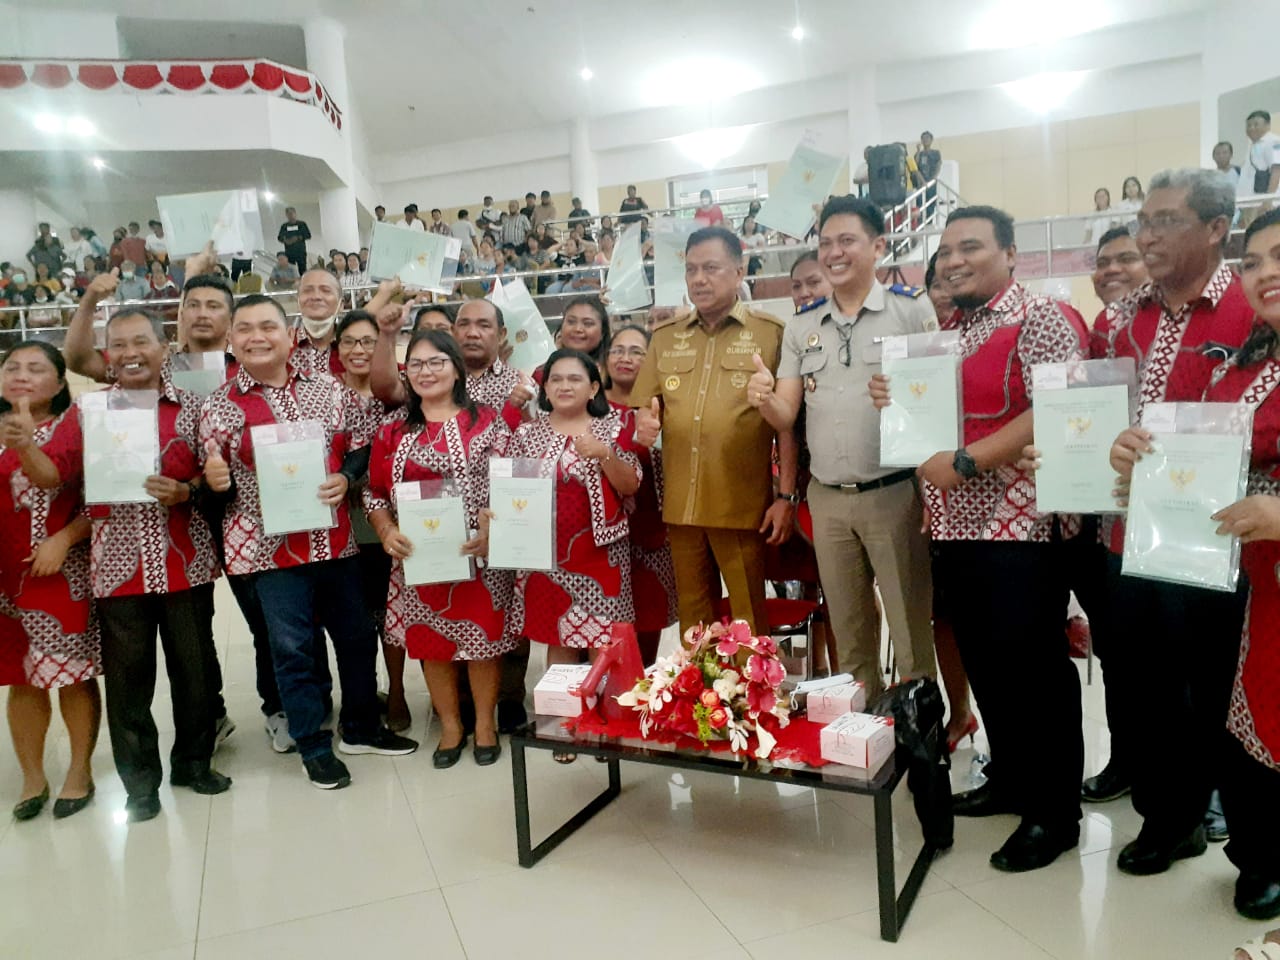 Gubernur Sulut Olly Dondokambey bersama warga penerima sertifikat tanah hibah, Senin, 19 Desember 2022, bertempat di Aula Mapalus Kantor Gubernur Sulut.